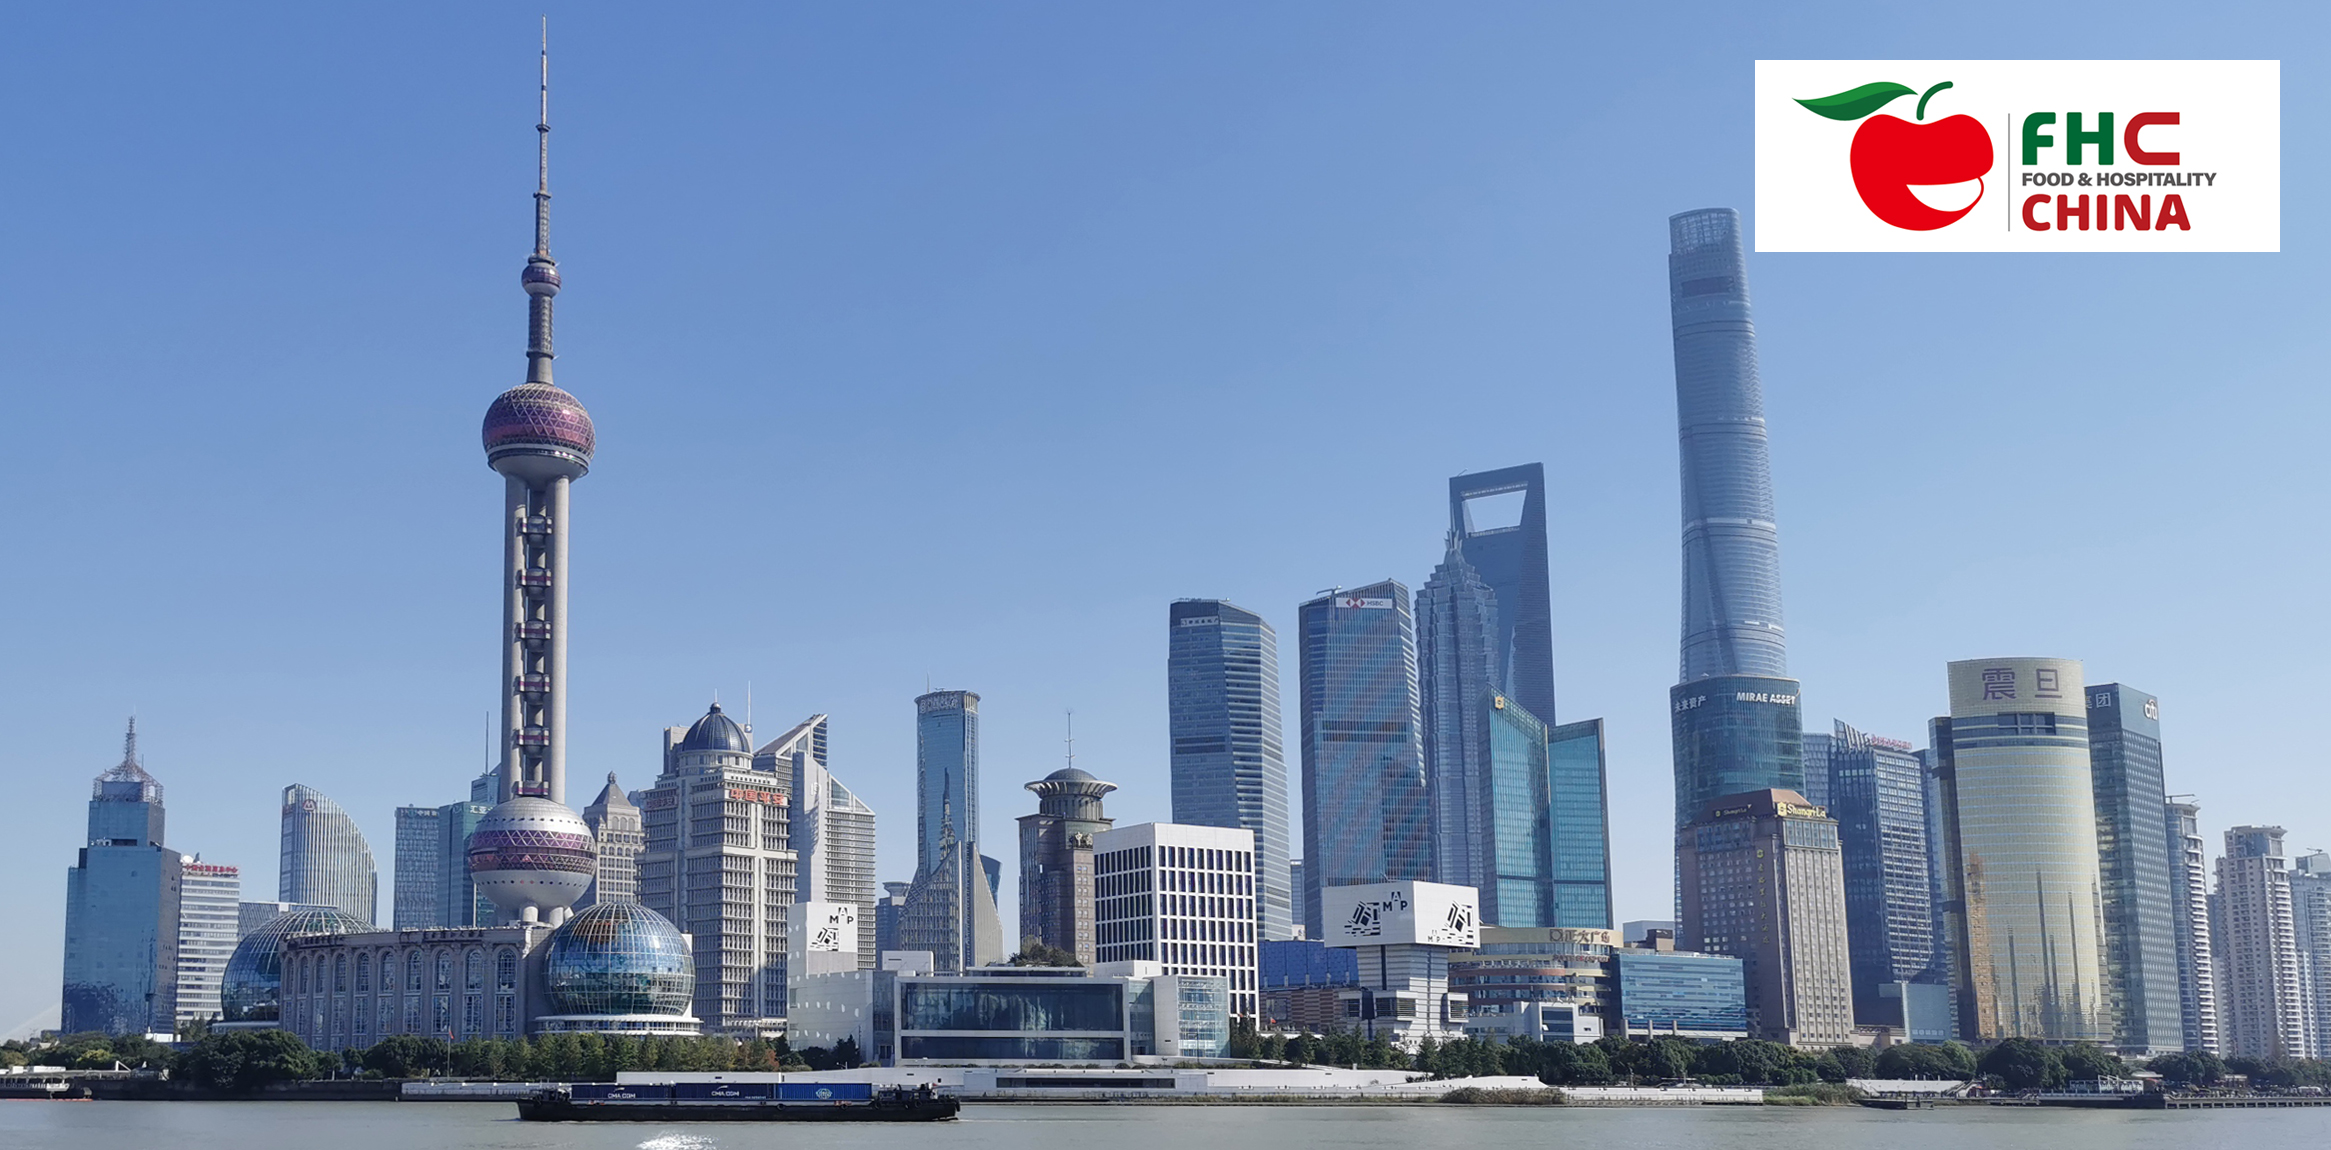 Shanghai skyline with the logo of FHC trade fair